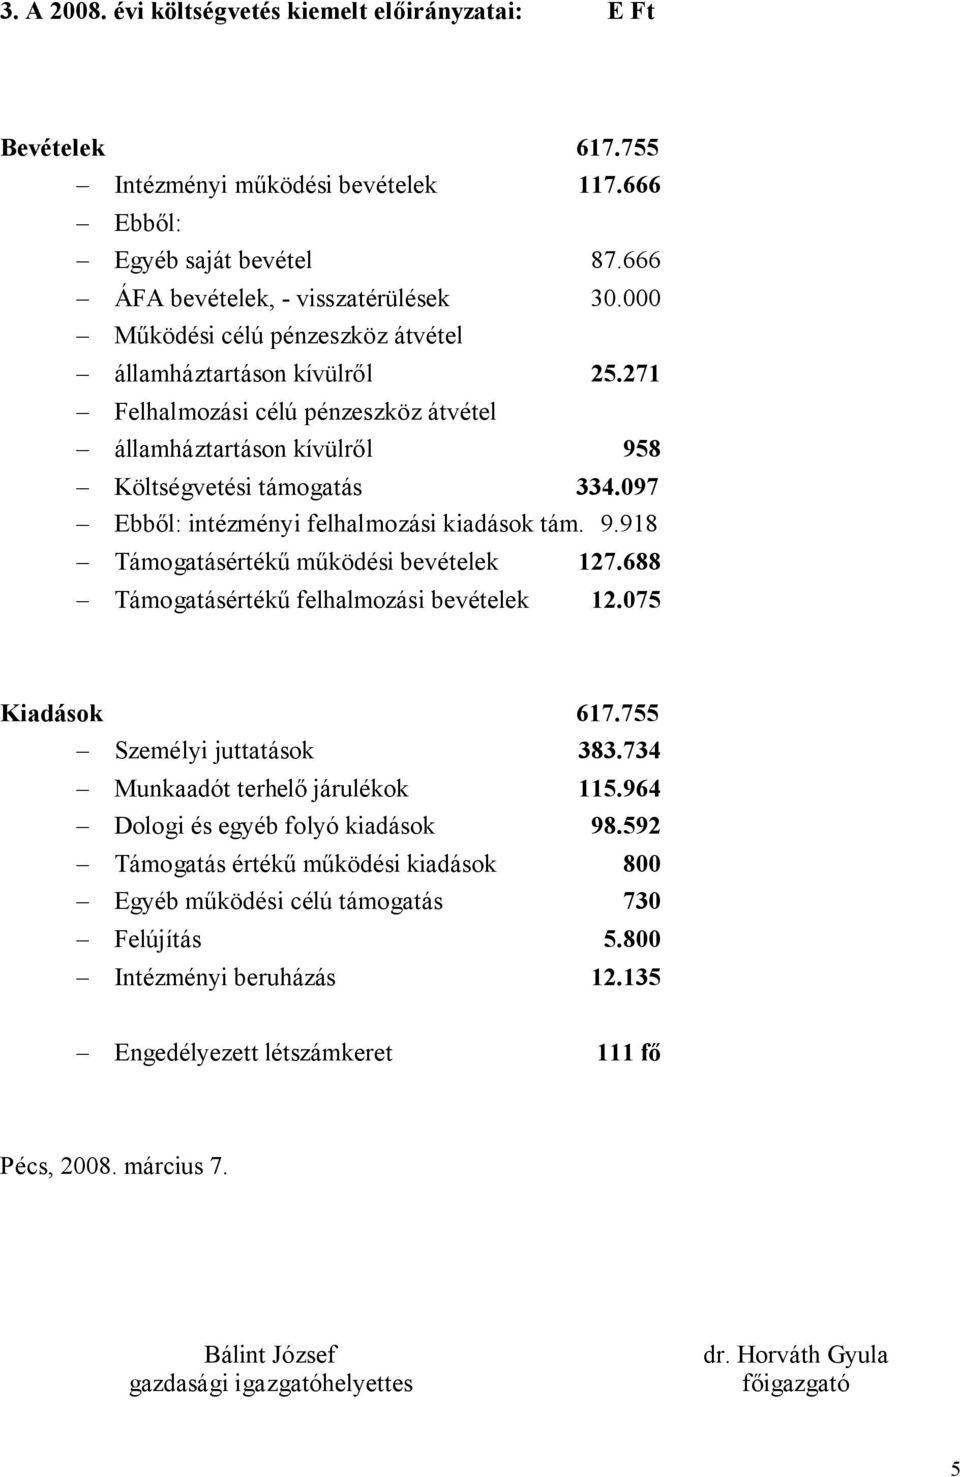 097 Ebből: intézményi felhalmozási kiadások tám. 9.918 Támogatásértékű működési bevételek 127.688 Támogatásértékű felhalmozási bevételek 12.075 Kiadások 617.755 Személyi juttatások 383.